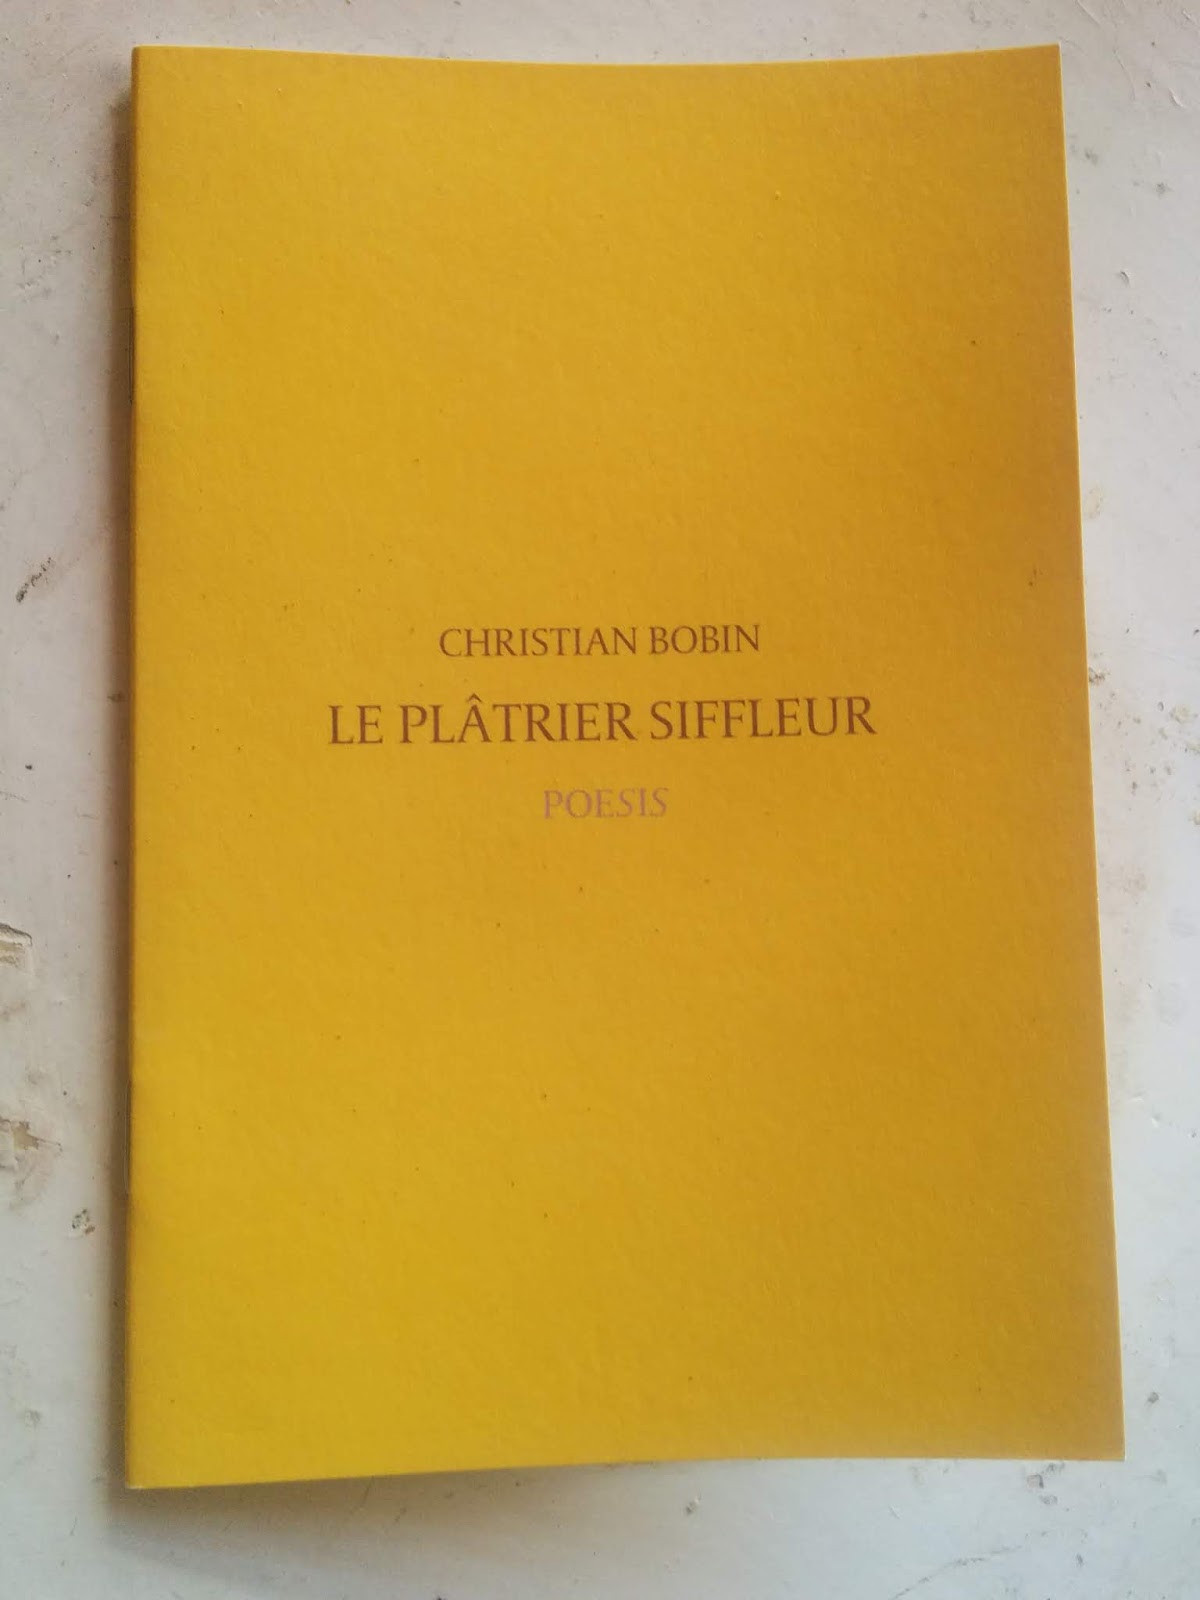 Denis Morin, auteur: Le plâtrier siffleur de Christian Bobin